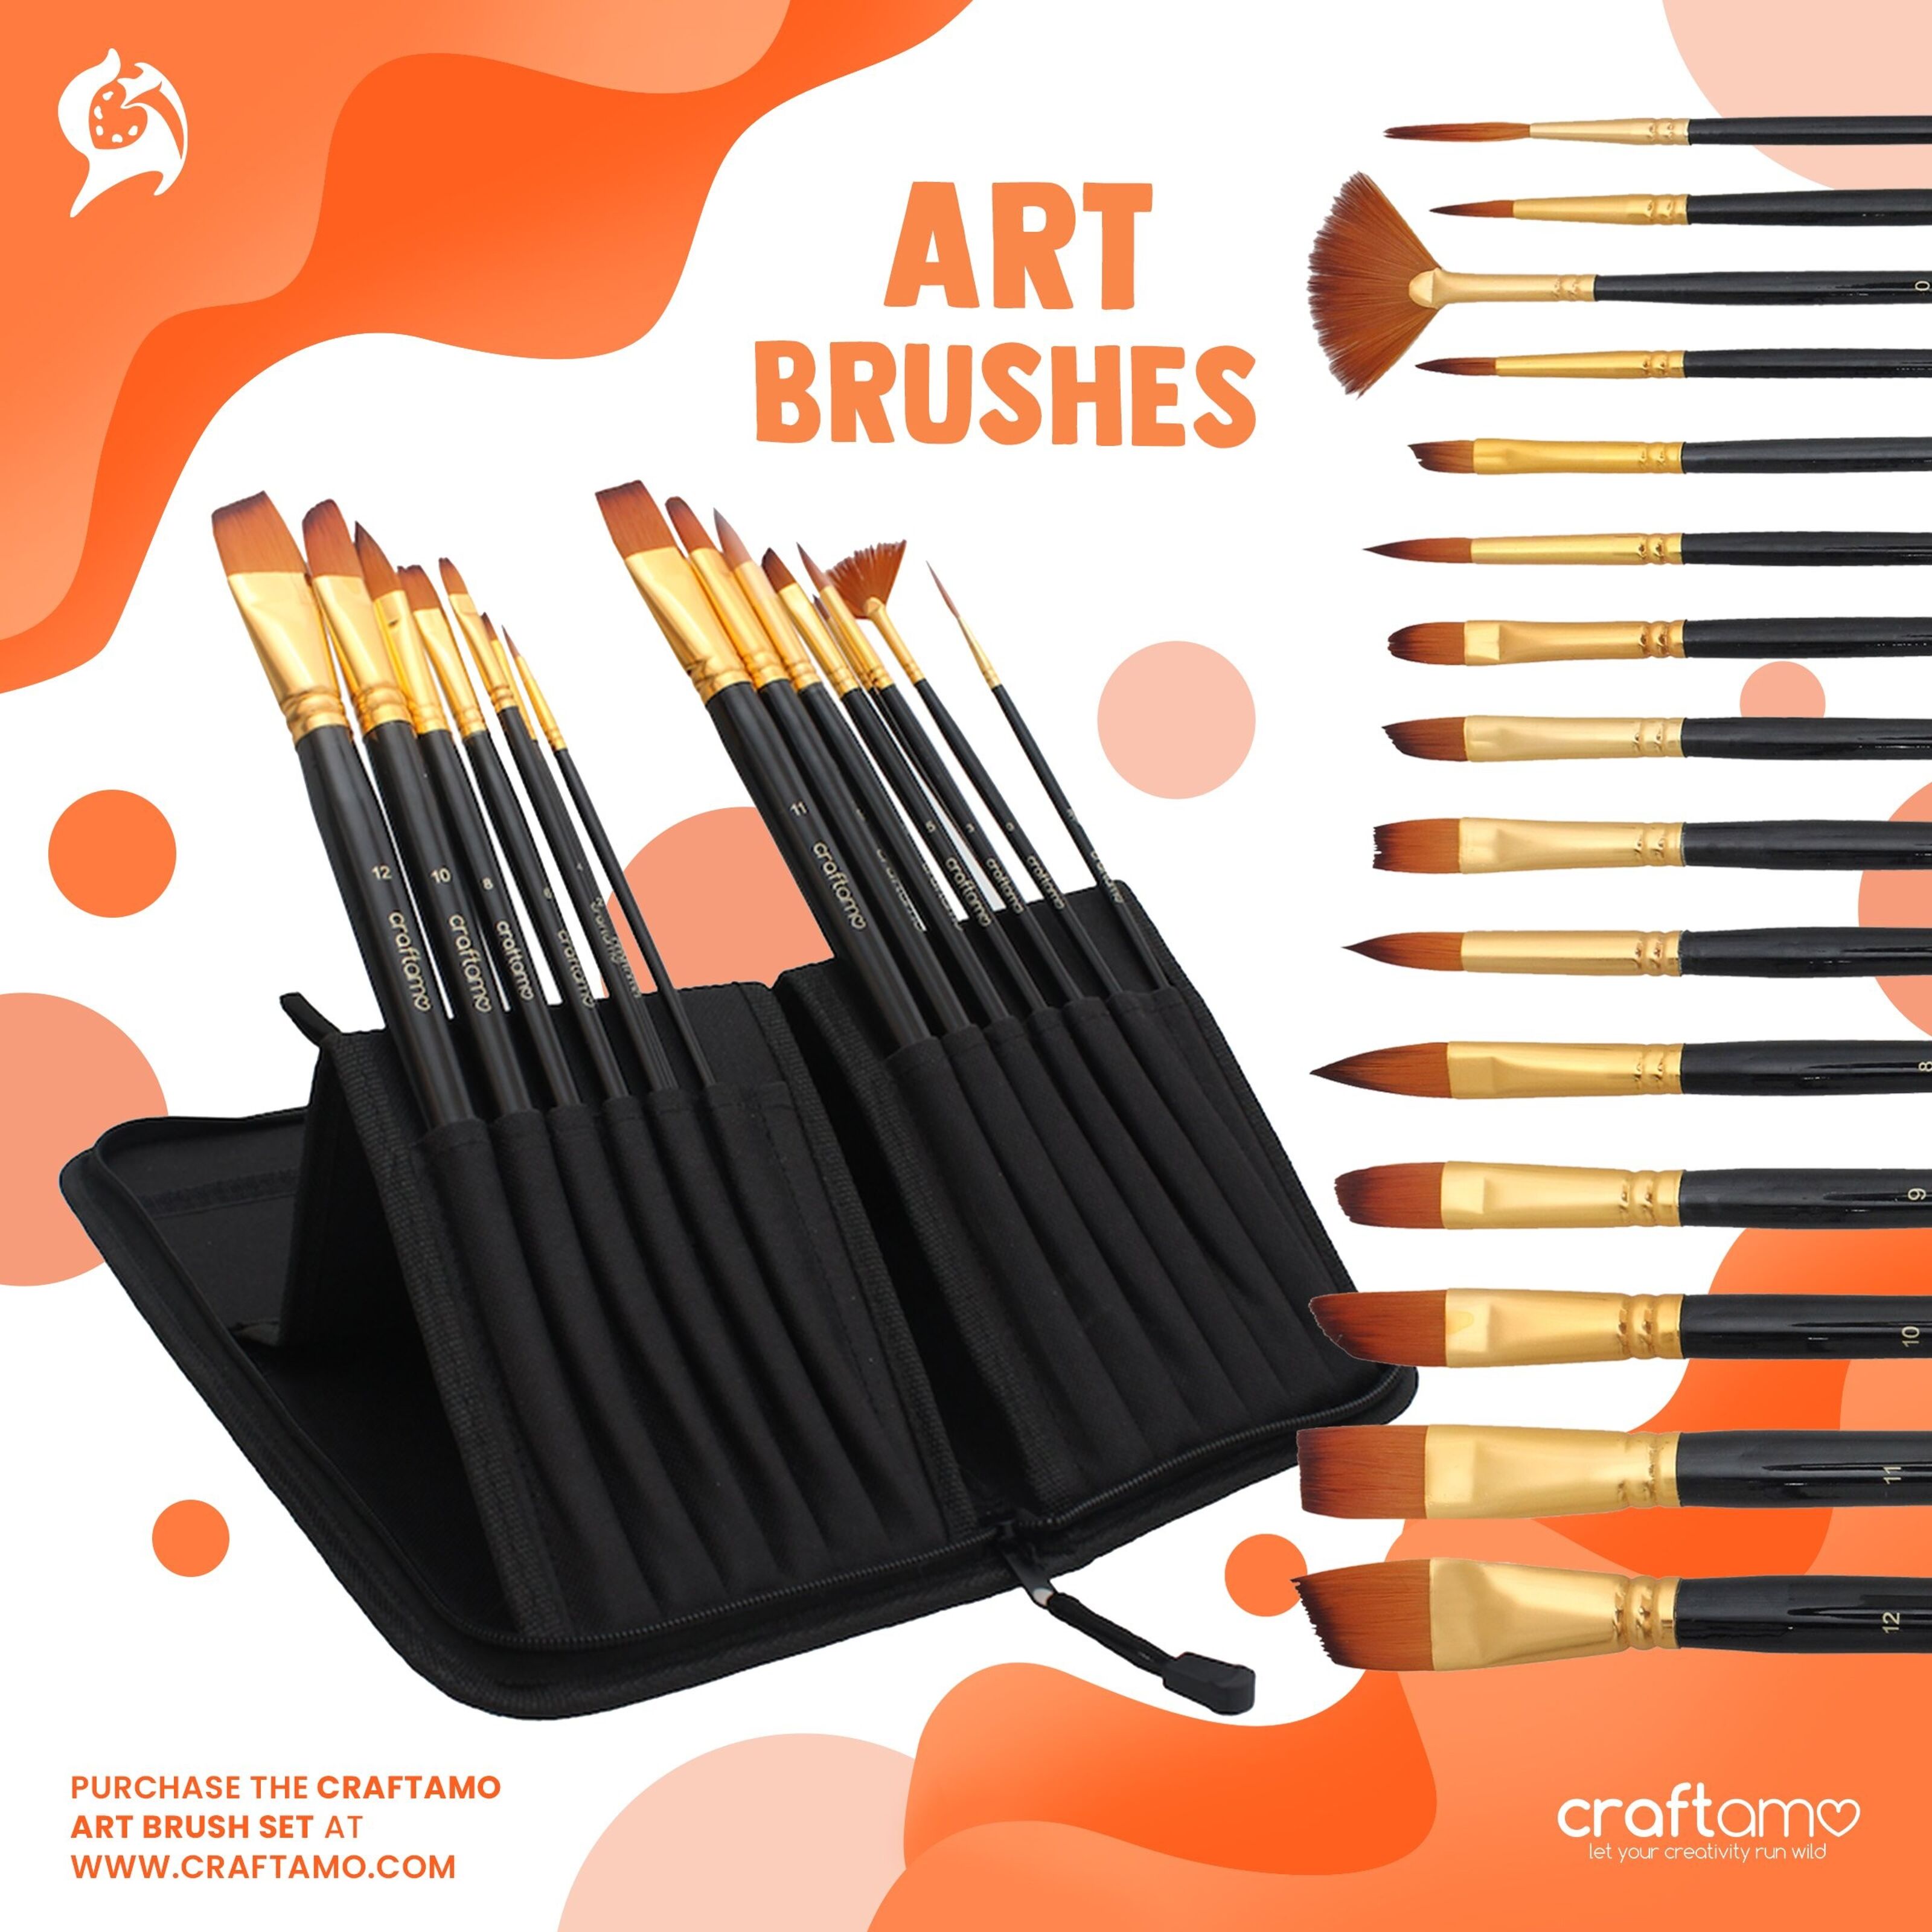 Let's Make Art Brushes